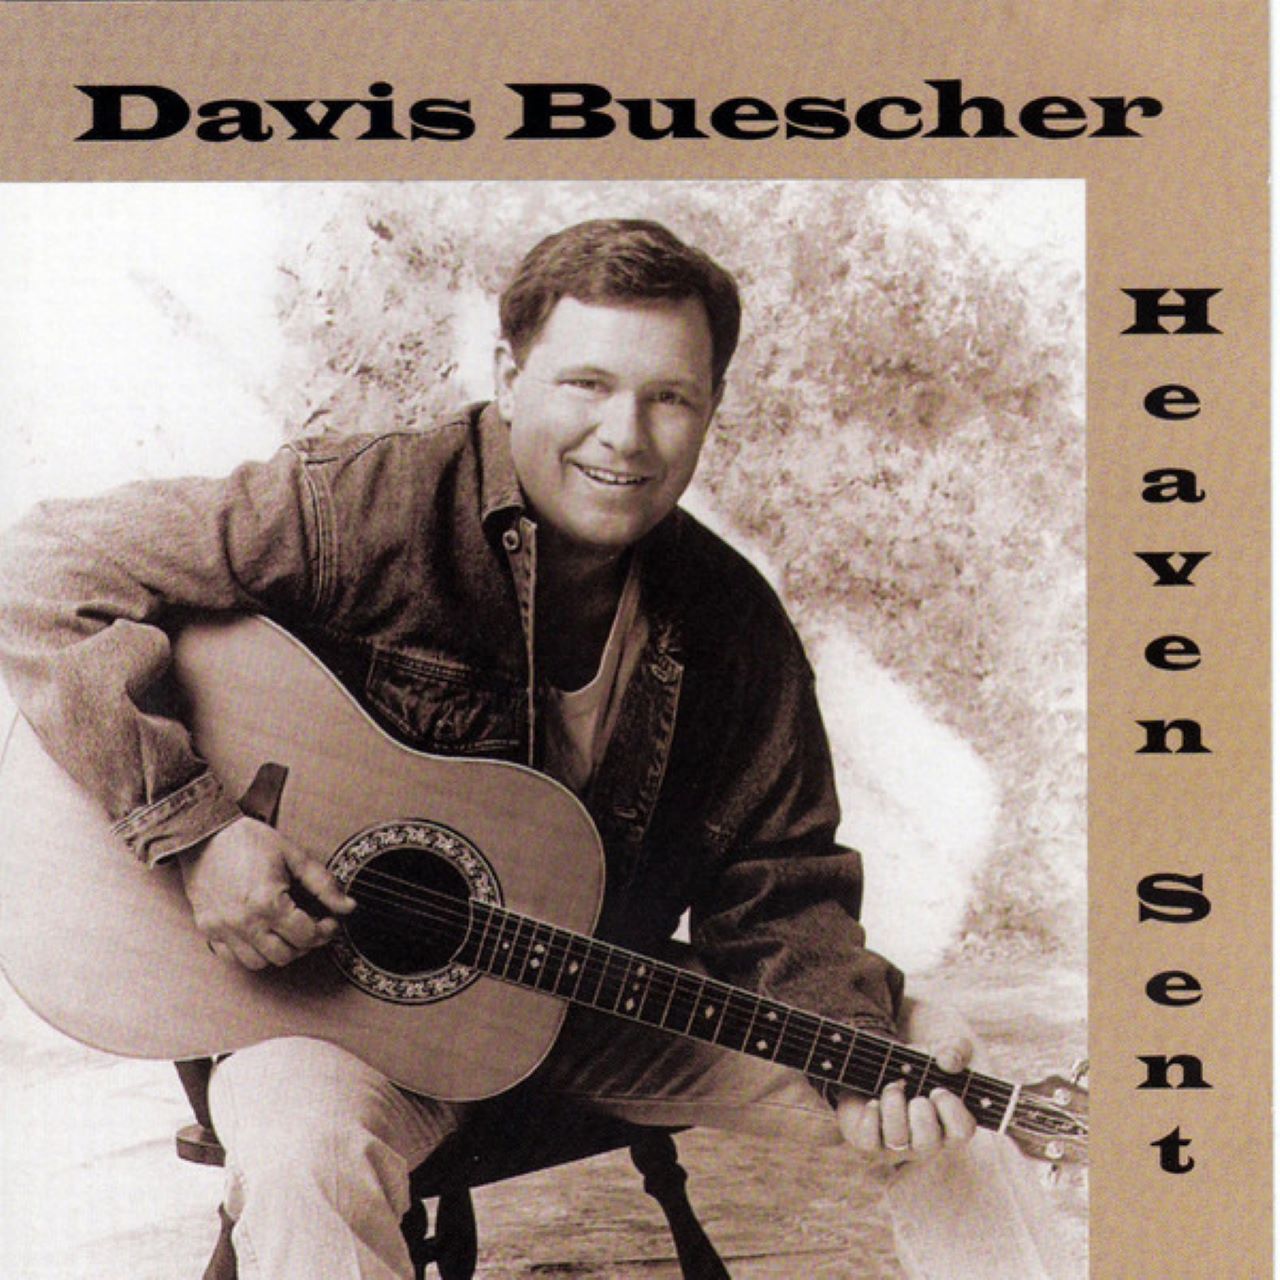 Davis Buescher - Heaven Sent cover album